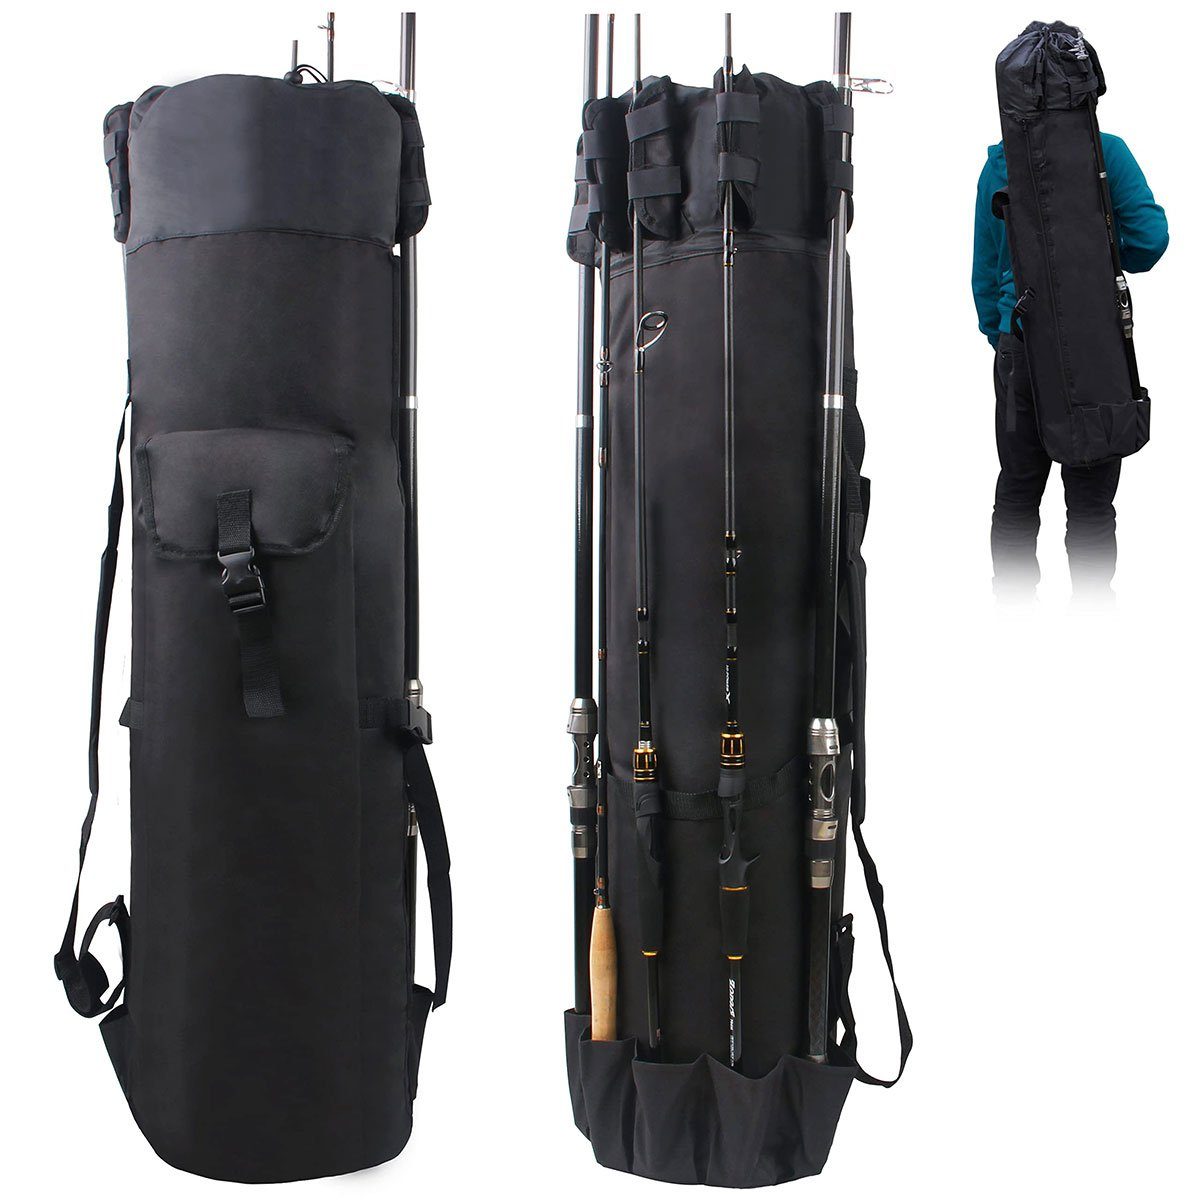 Welikera Angelrutentasche Angeltasche, für 5 Ruten großes Fassungsvermögen elastisches Design